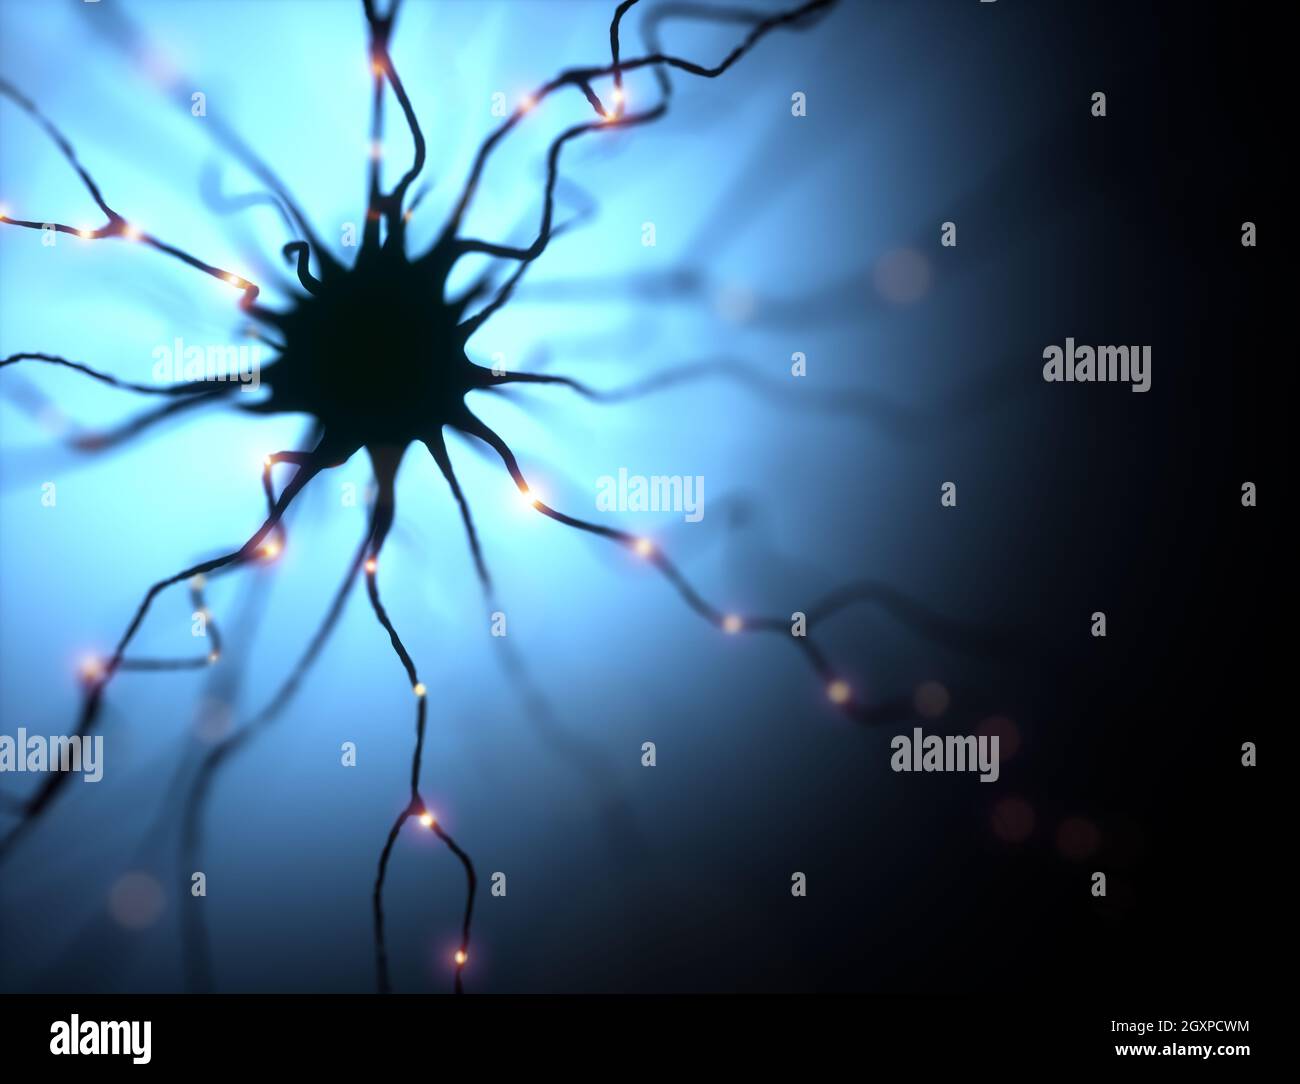 3D Ilustración, neuronas y sus conexiones. Simulación fotográfica microscópica del sistema nervioso humano. Foto de stock